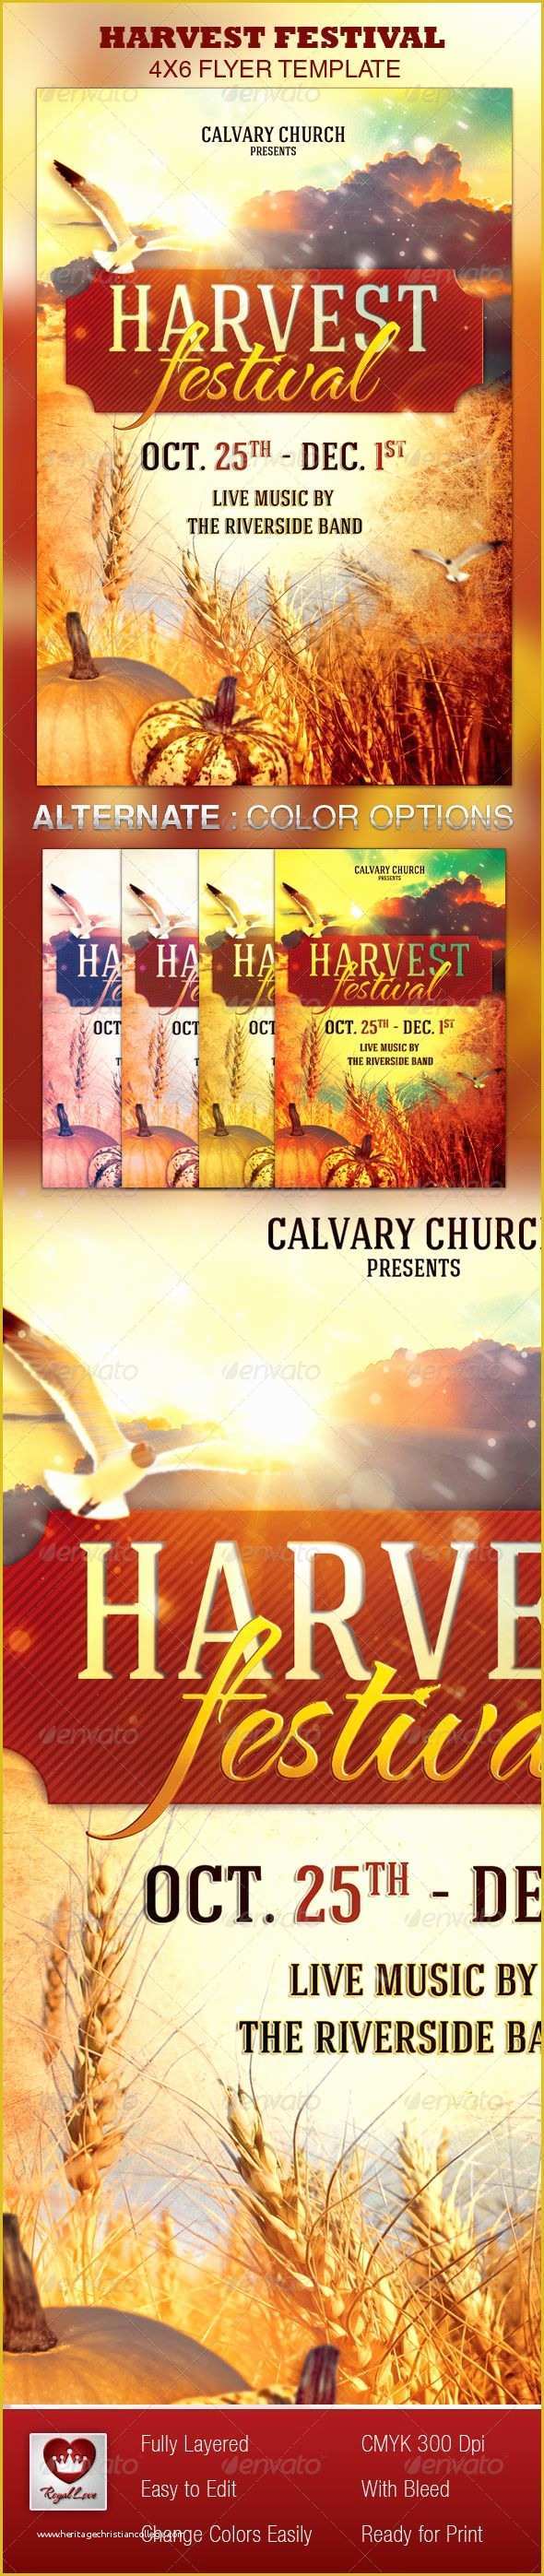 Harvest Festival Flyer Free Template Of Harvest Festival Church Flyer Template